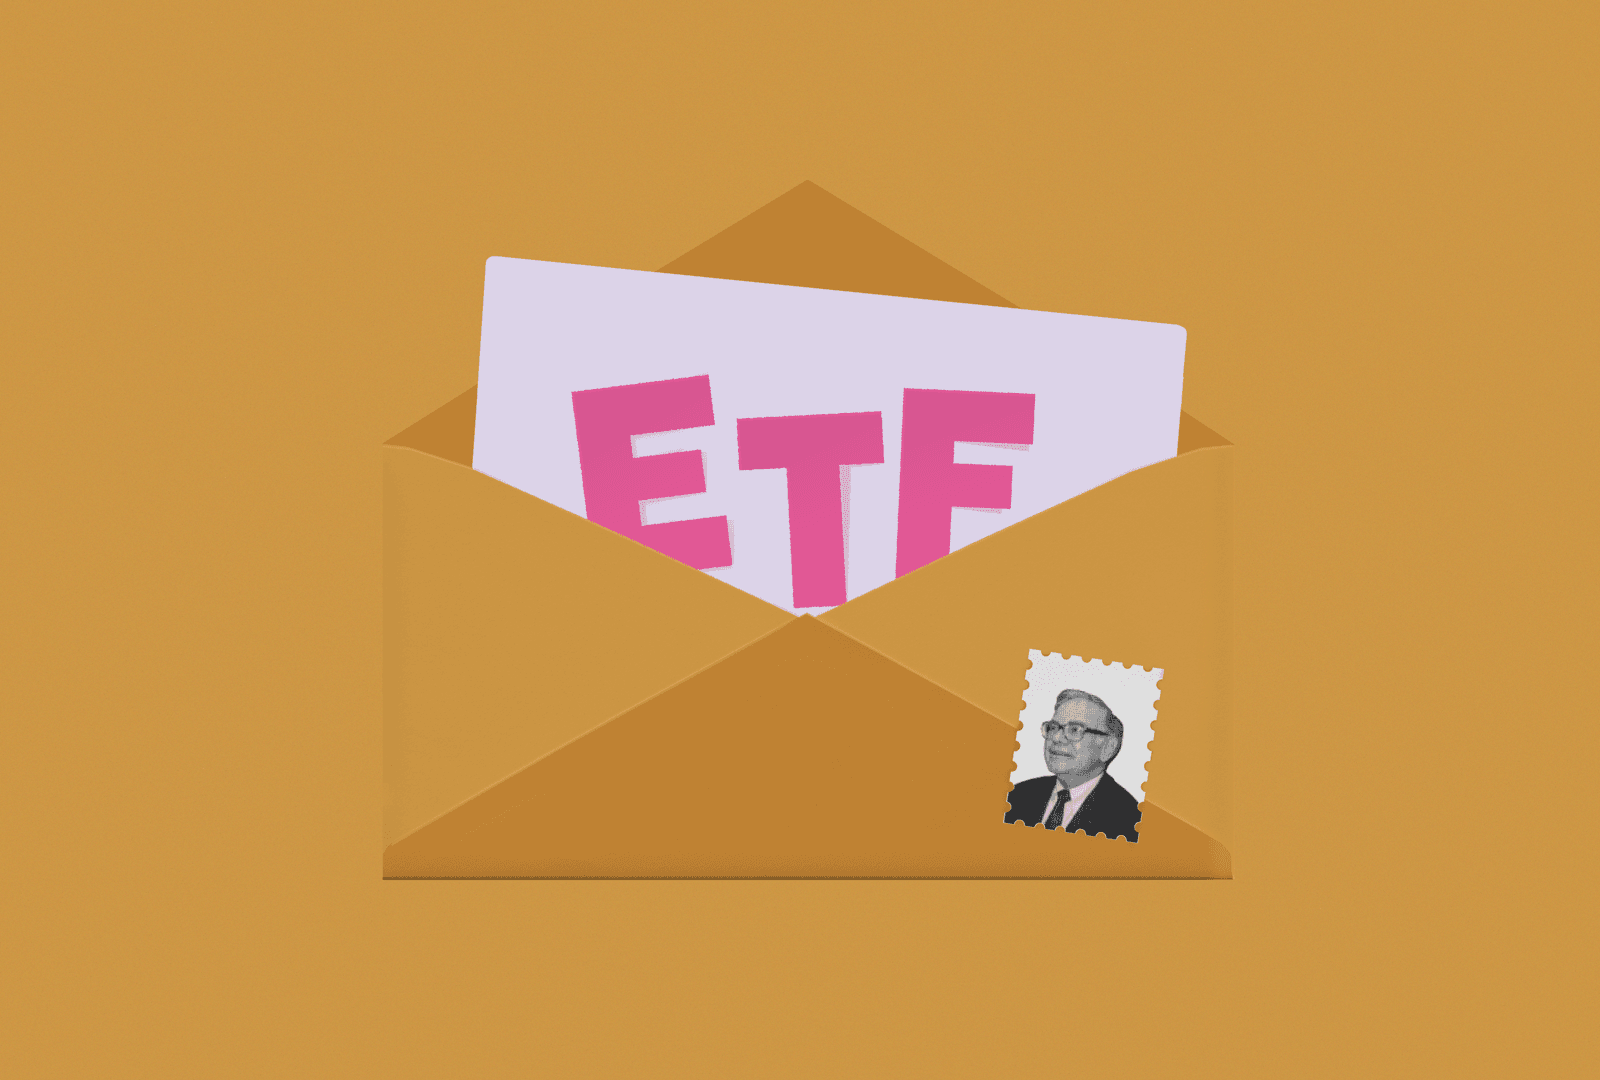 ETF가 적힌 종이가 들어간 편지봉투와 워렌버핏 사진 우표